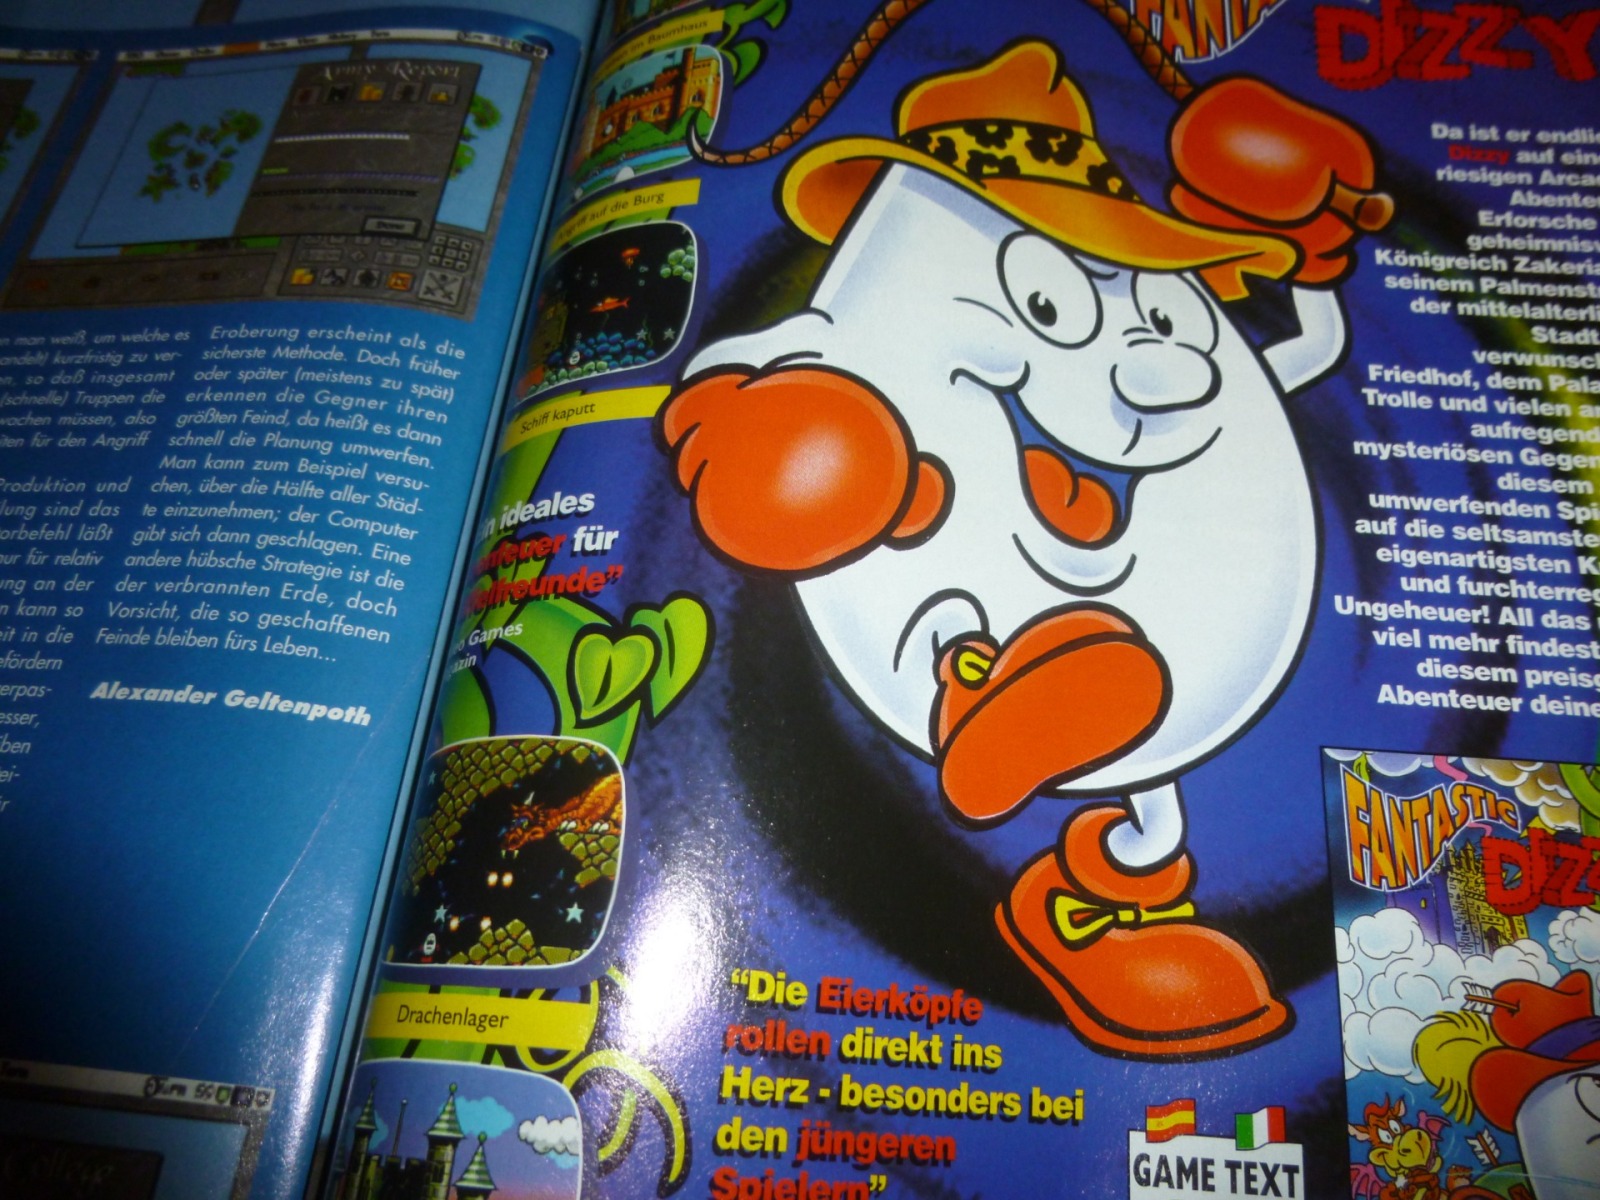 Play Time - Das Computer- und Videospiele-Magazin - Ausgabe 12/93 1993 27